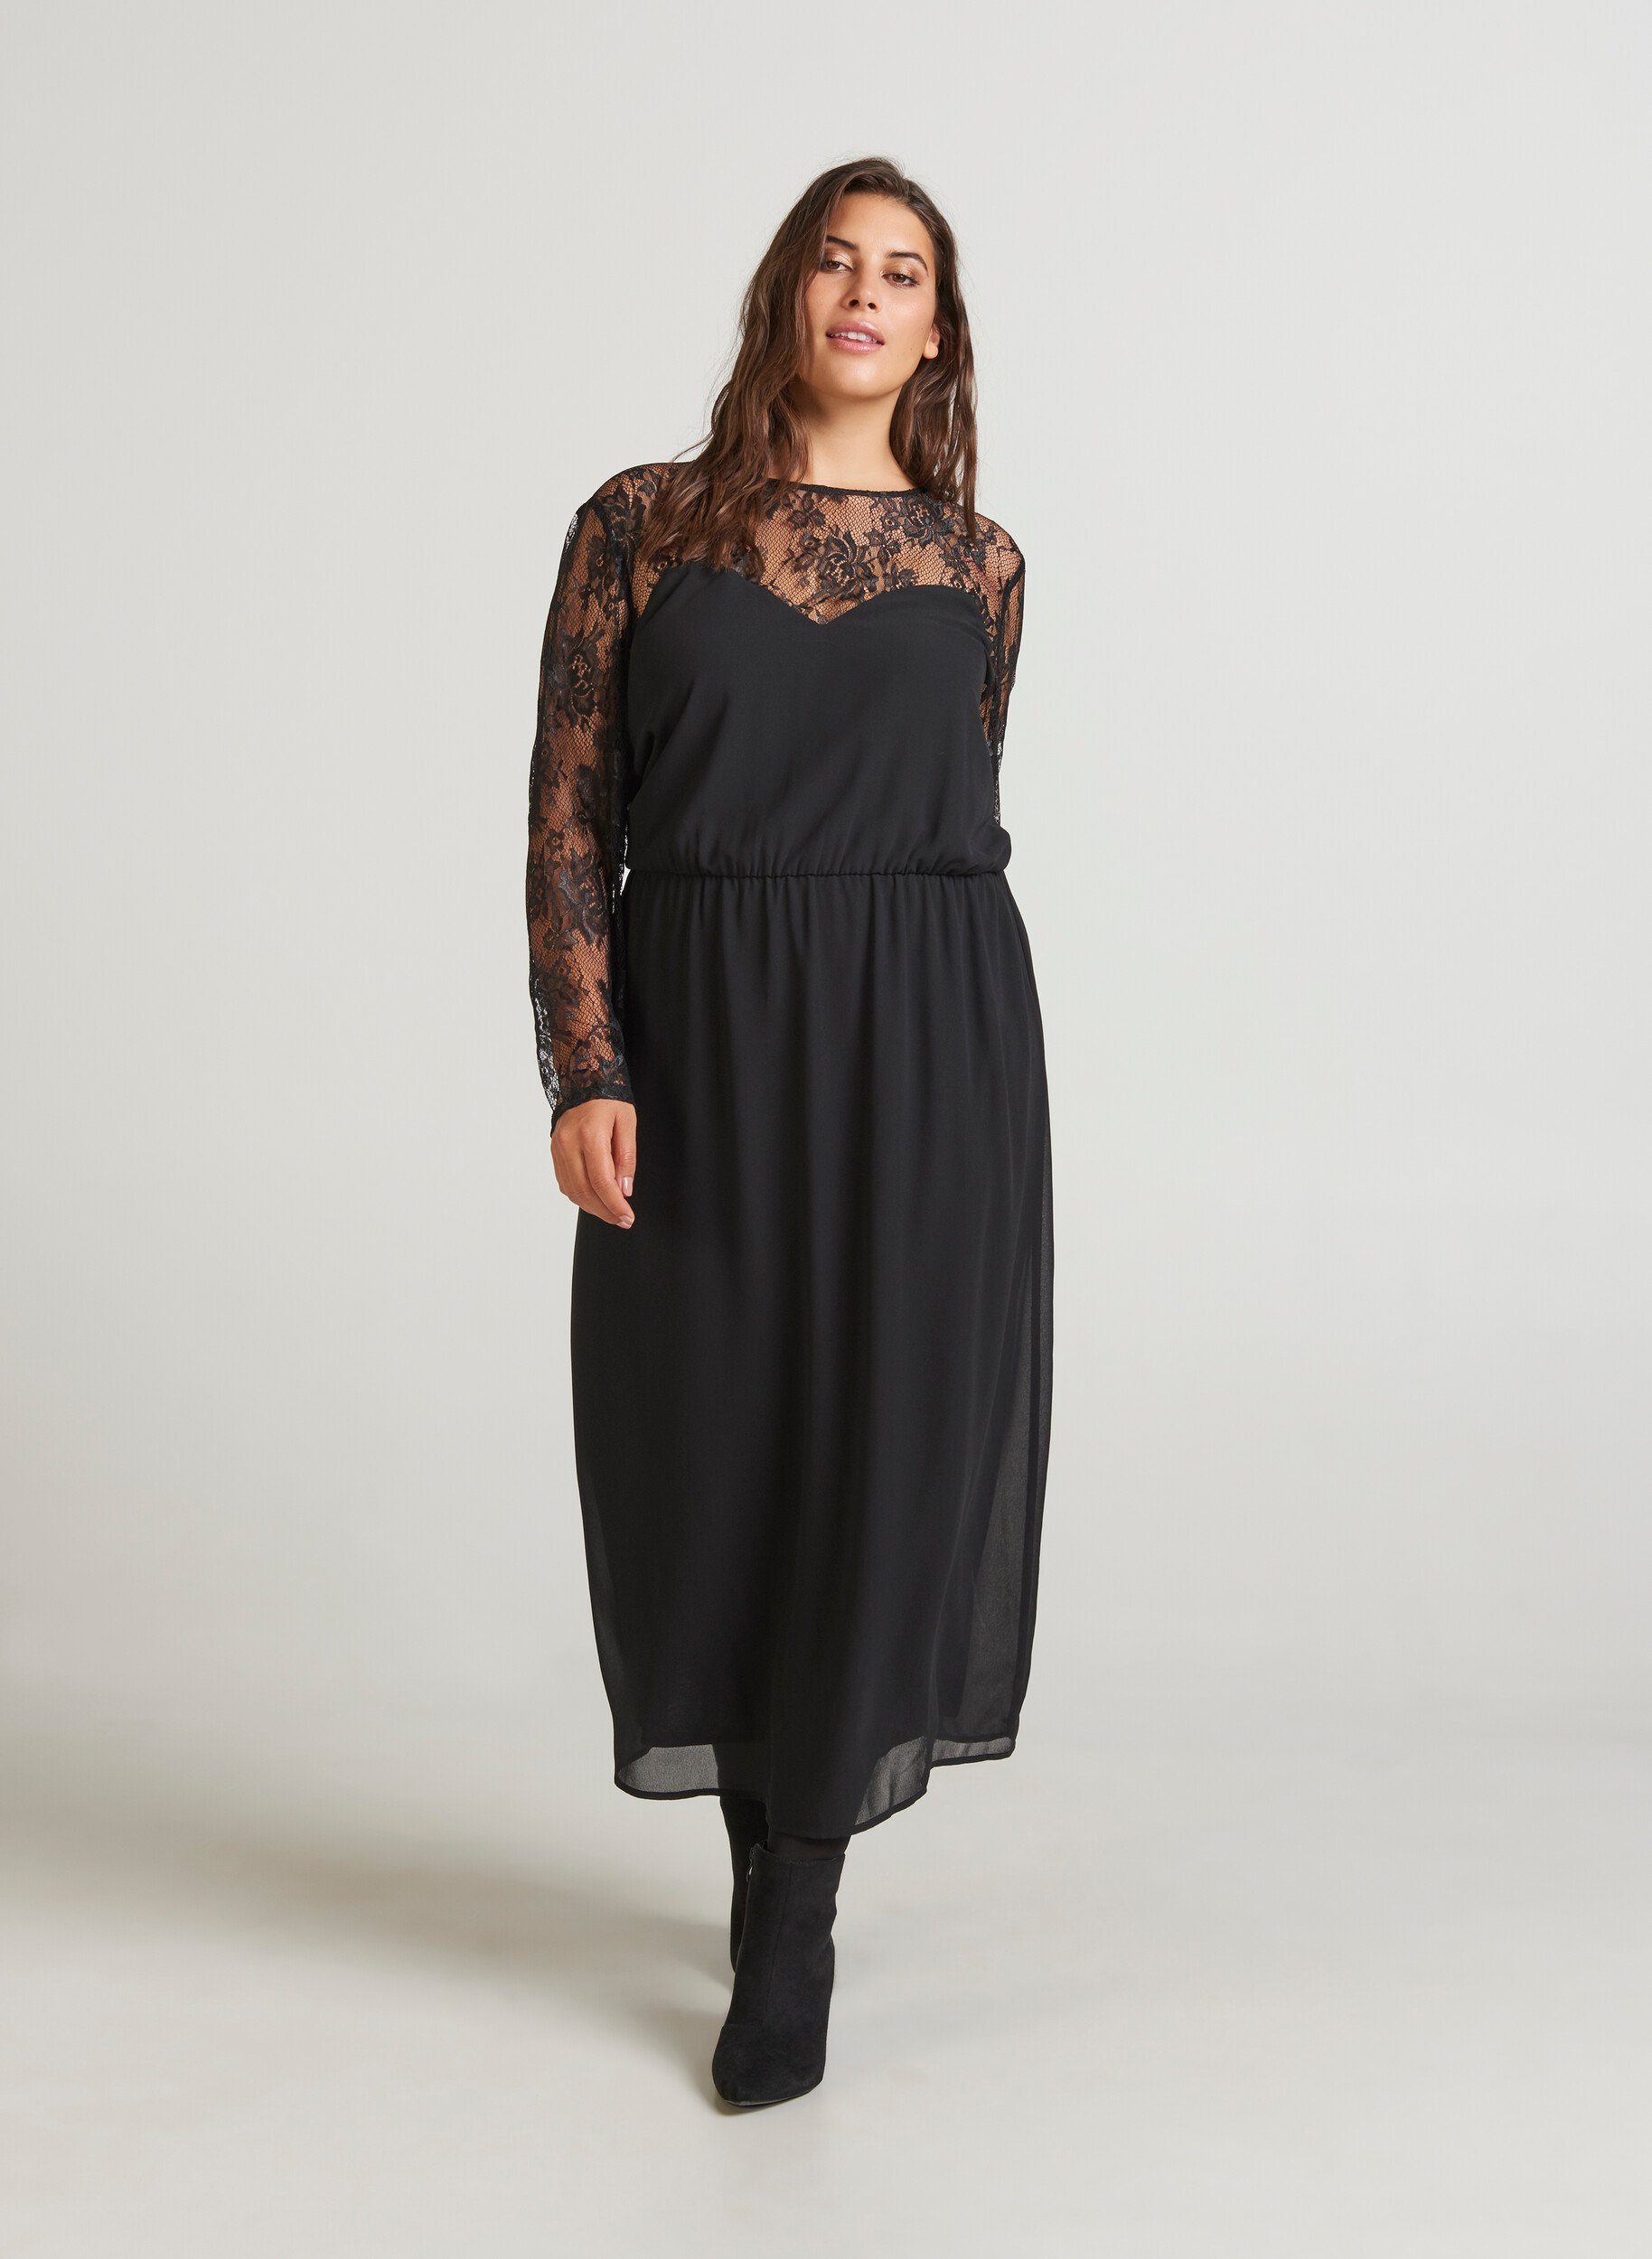 Zizzi Spitzenkleid Damen Große Größen Kleid Langarm Elegant Spitze  Abendkleid online kaufen | OTTO